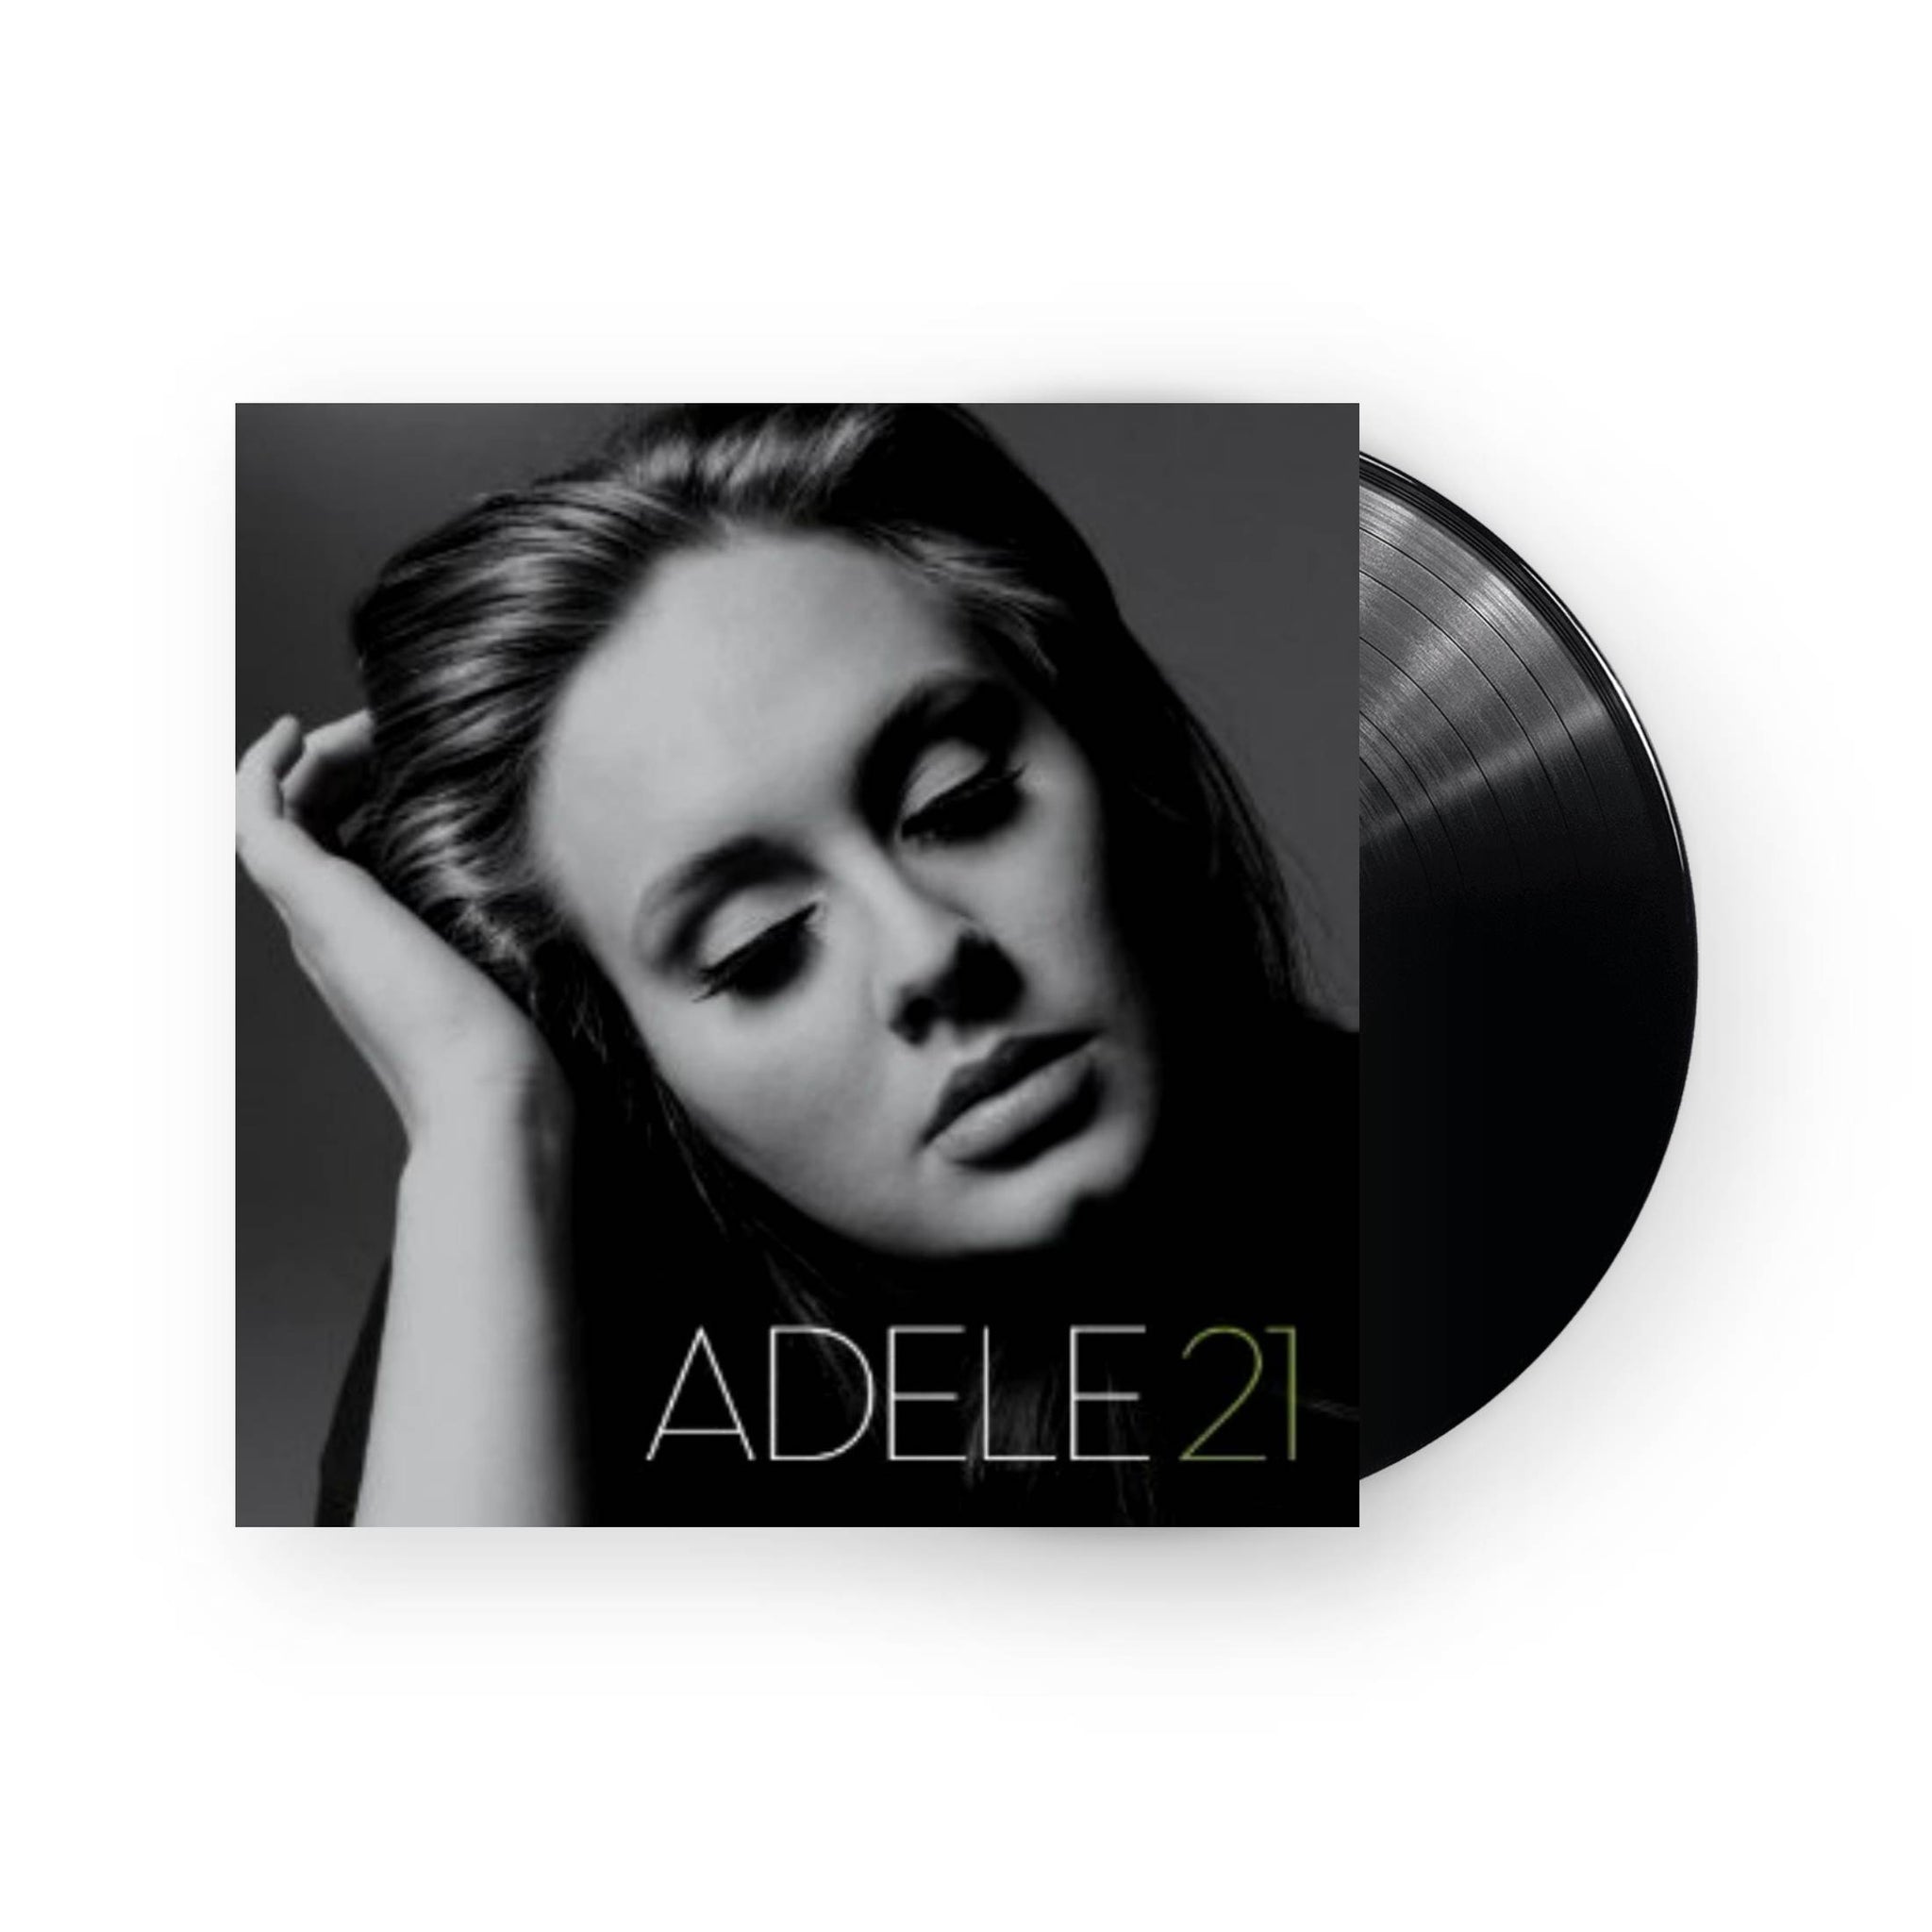 Adele 21 LP (Black Vinyl) – Plastic Stone Records